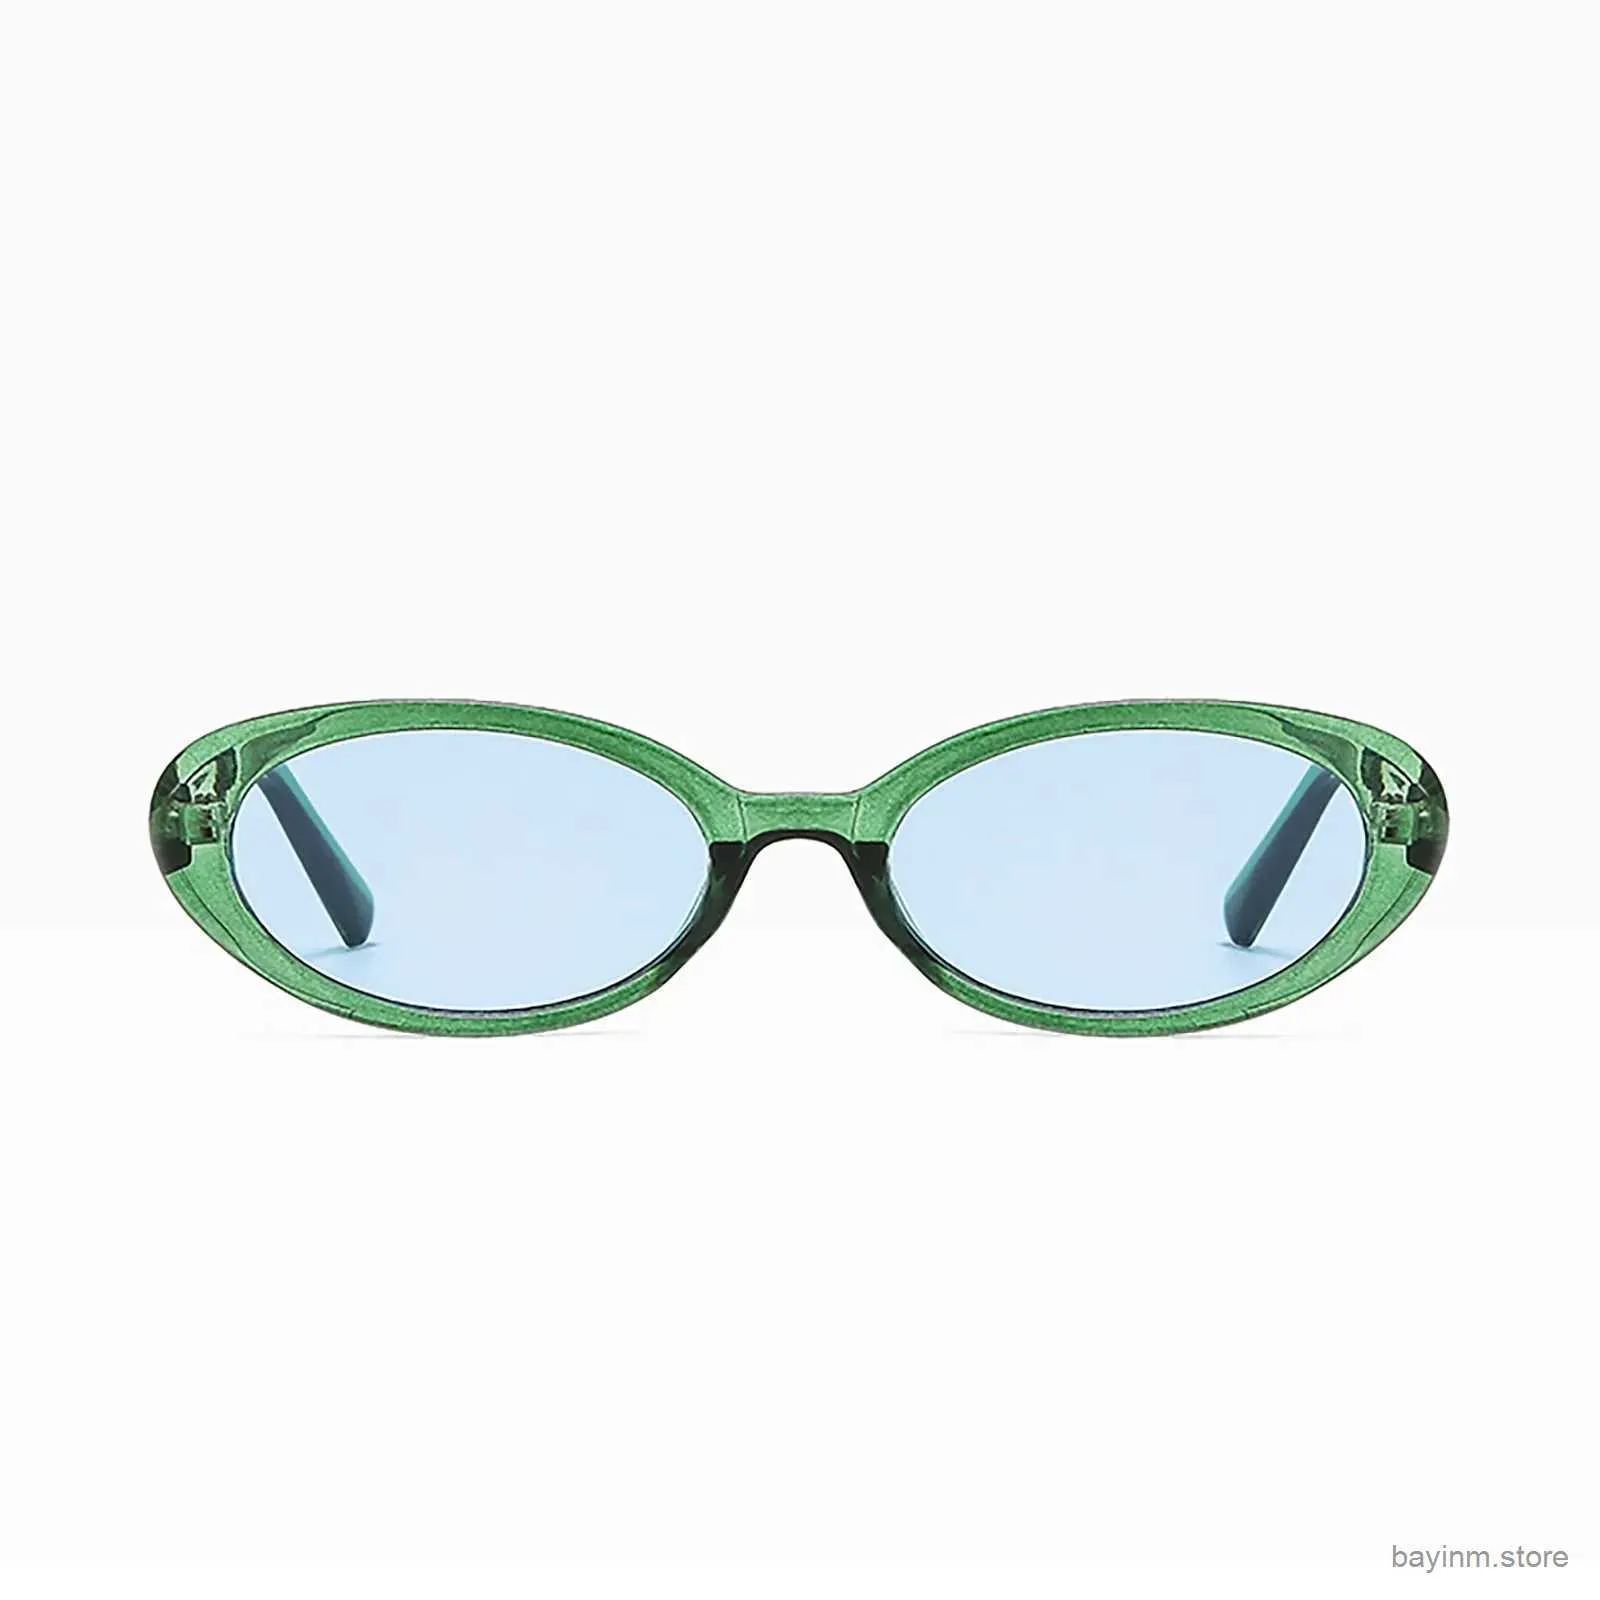 Güneş gözlükleri vintage polarize oval güneş gözlükleri kadın 90s stil retro küçük çerçeve UV koruma güneş gözlükleri bayanlar gençler açık gözlükler